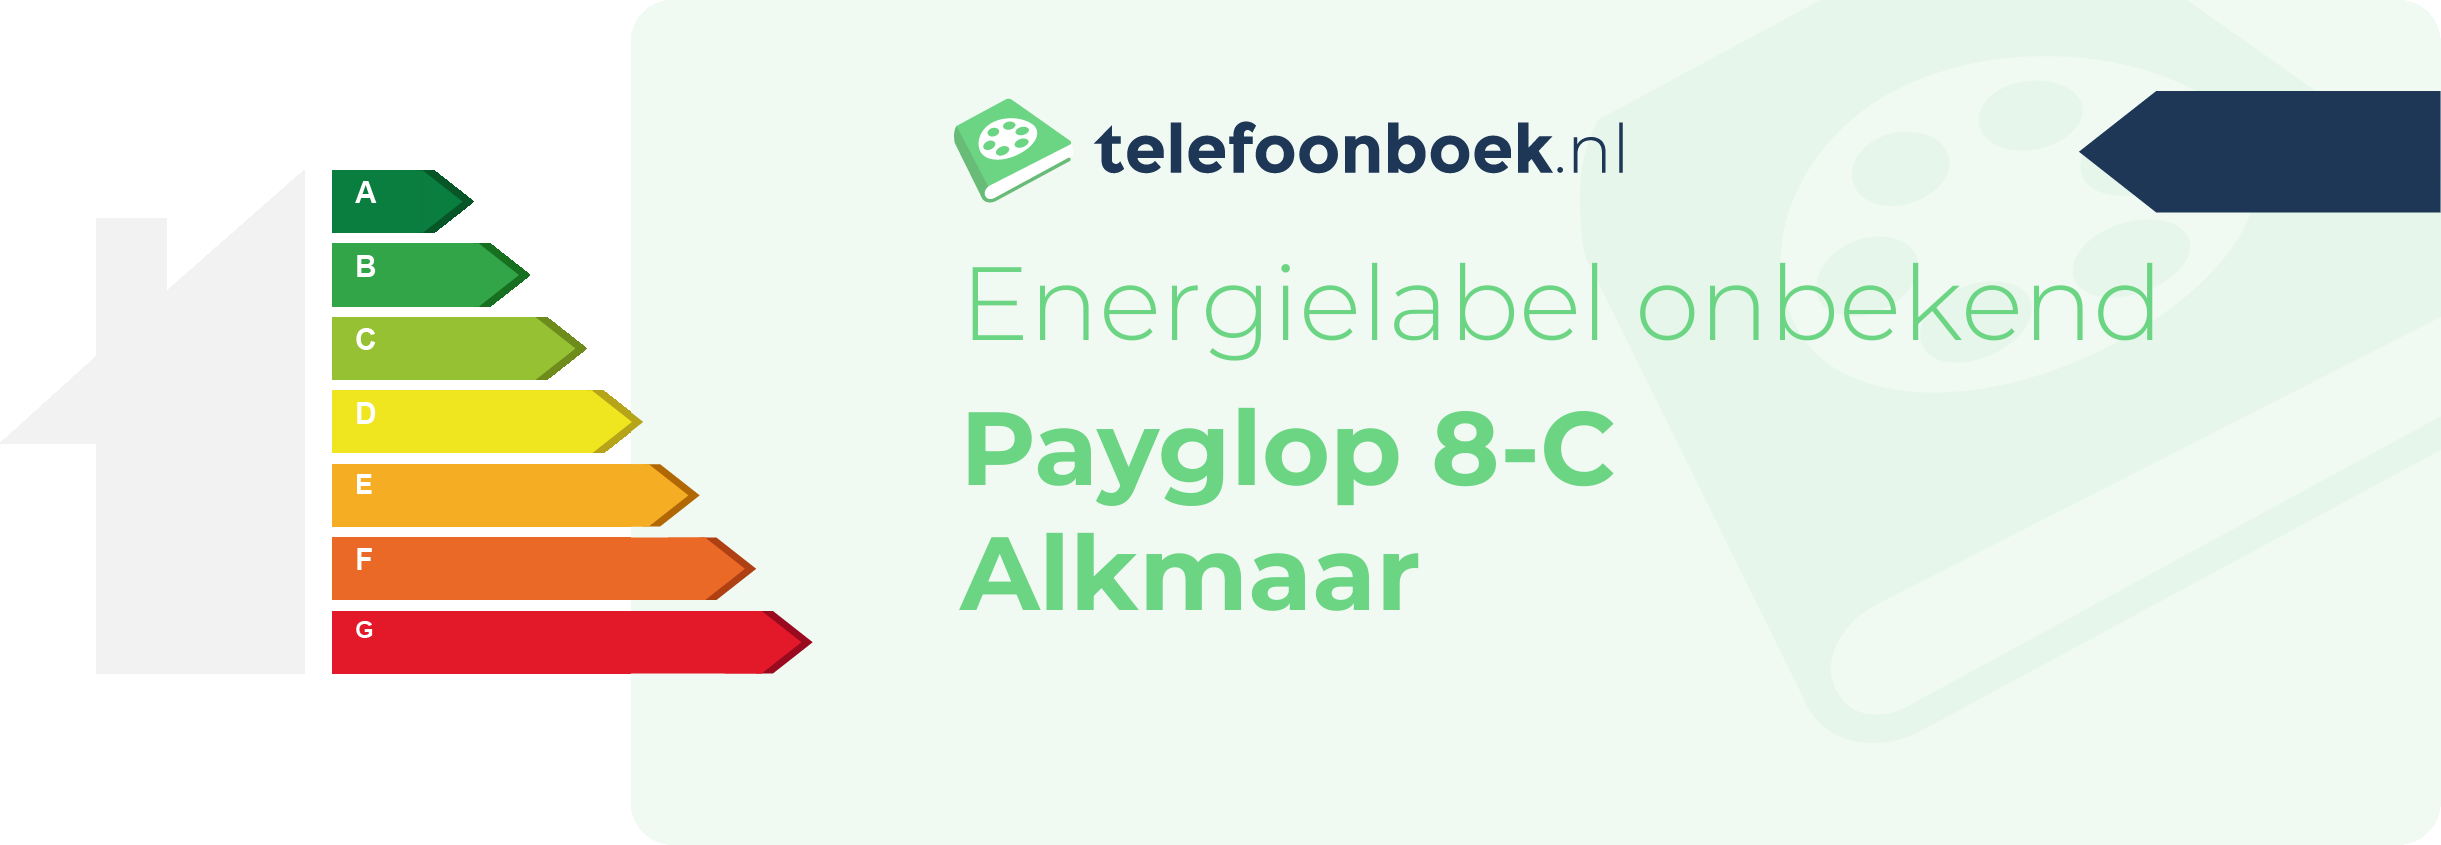 Energielabel Payglop 8-C Alkmaar